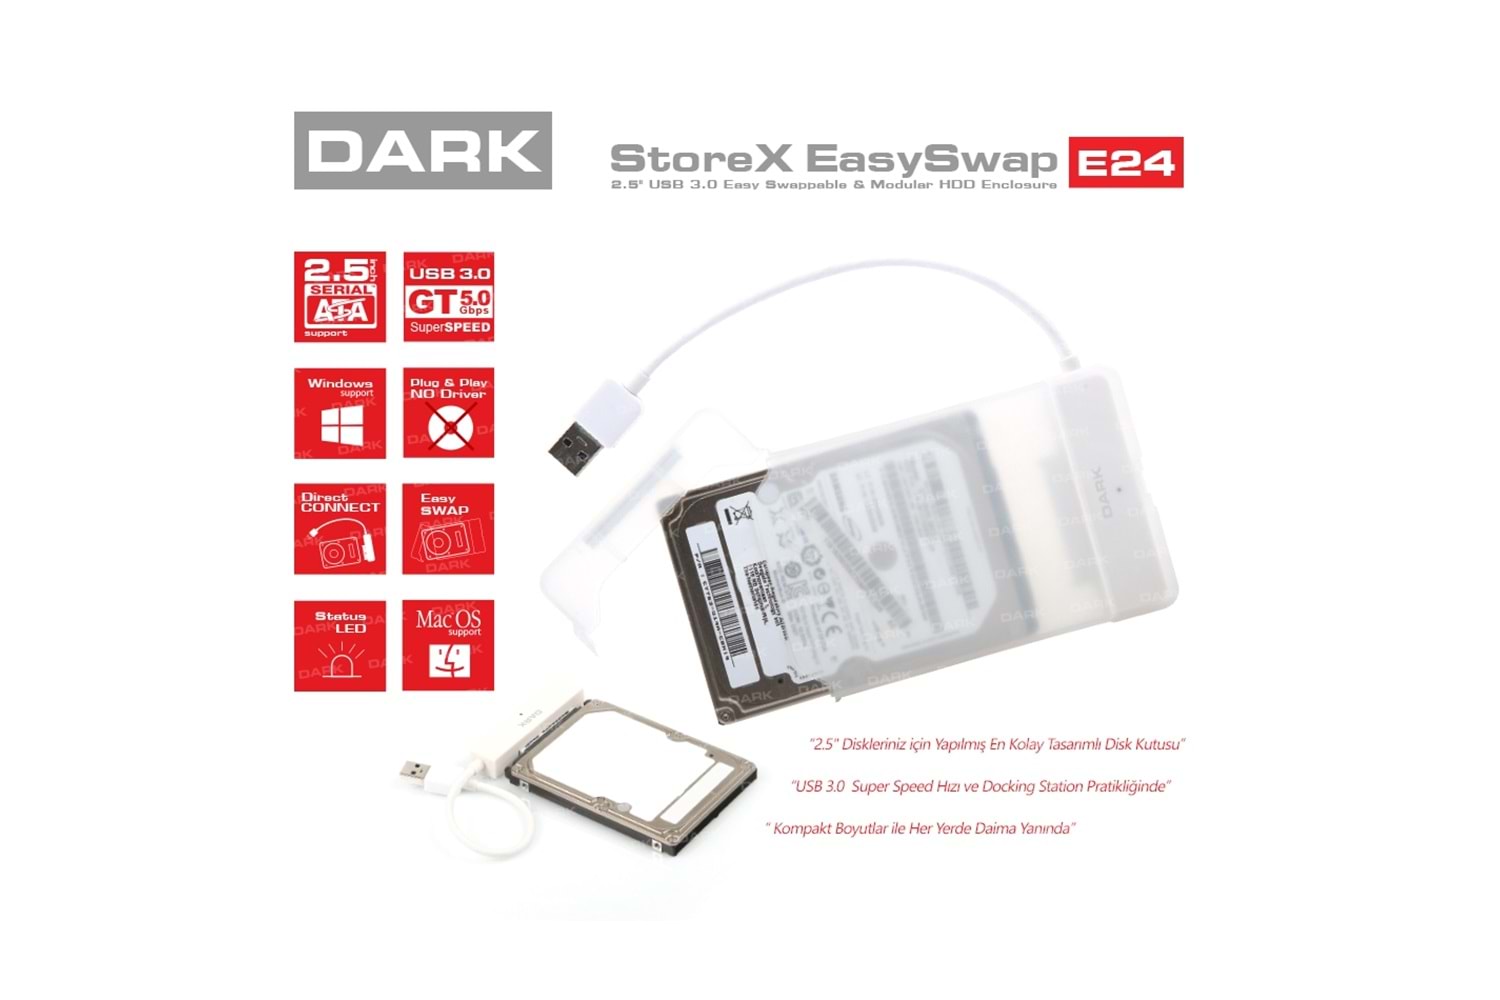 DARK DK-AC-DSE24U3 STOREX E24 2.5